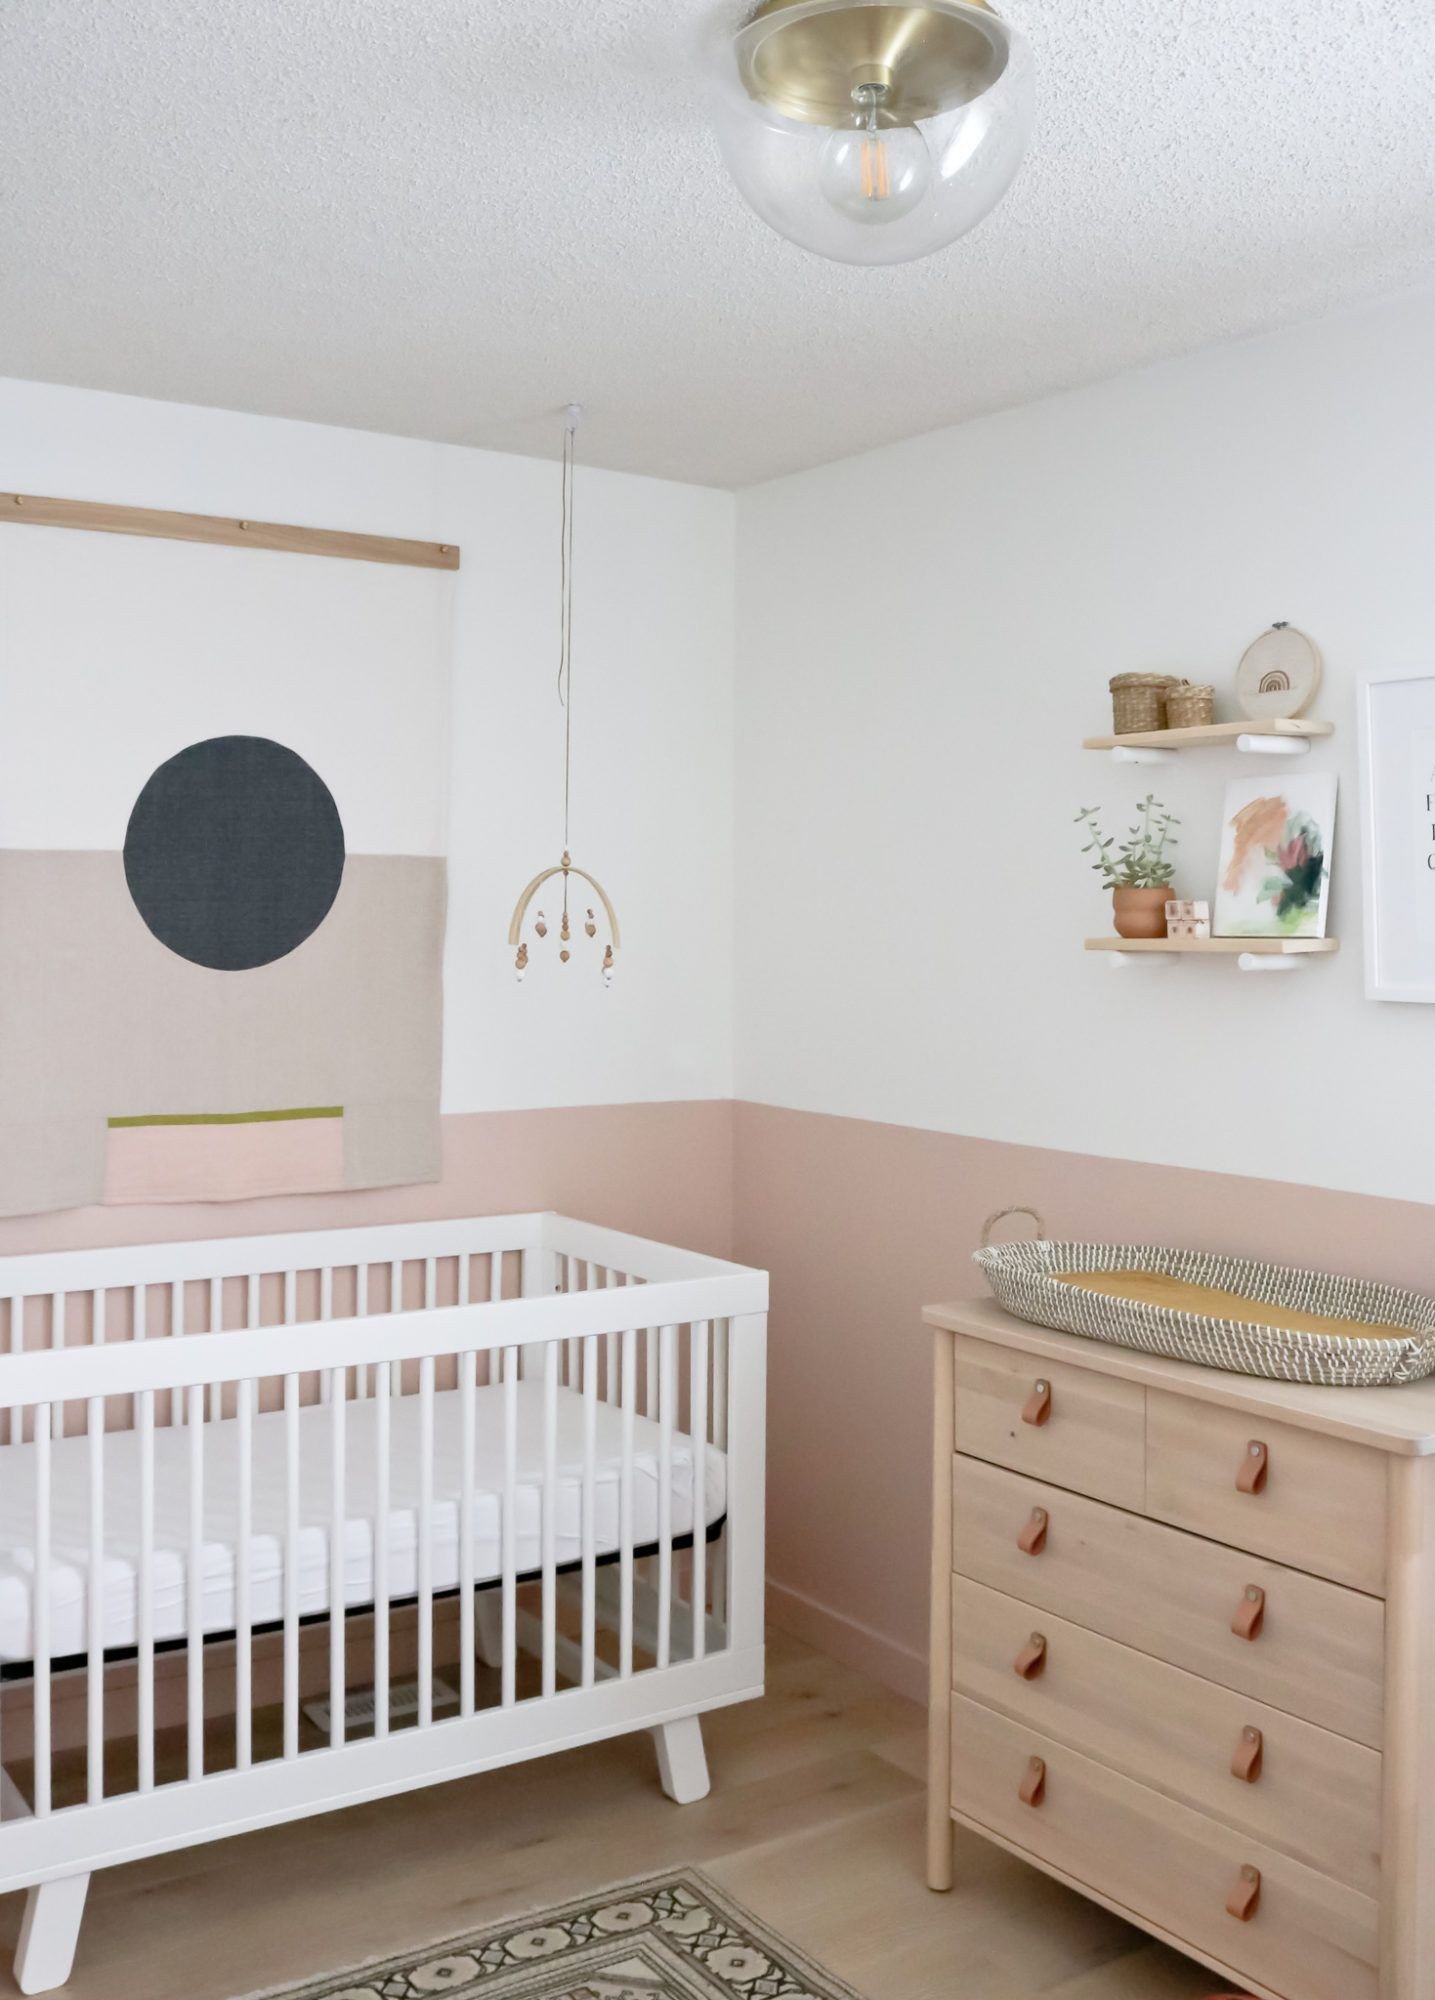 Baby Girl Bedroom Decor Elegant the Nursery Reveal – Baby Girl E S New Room